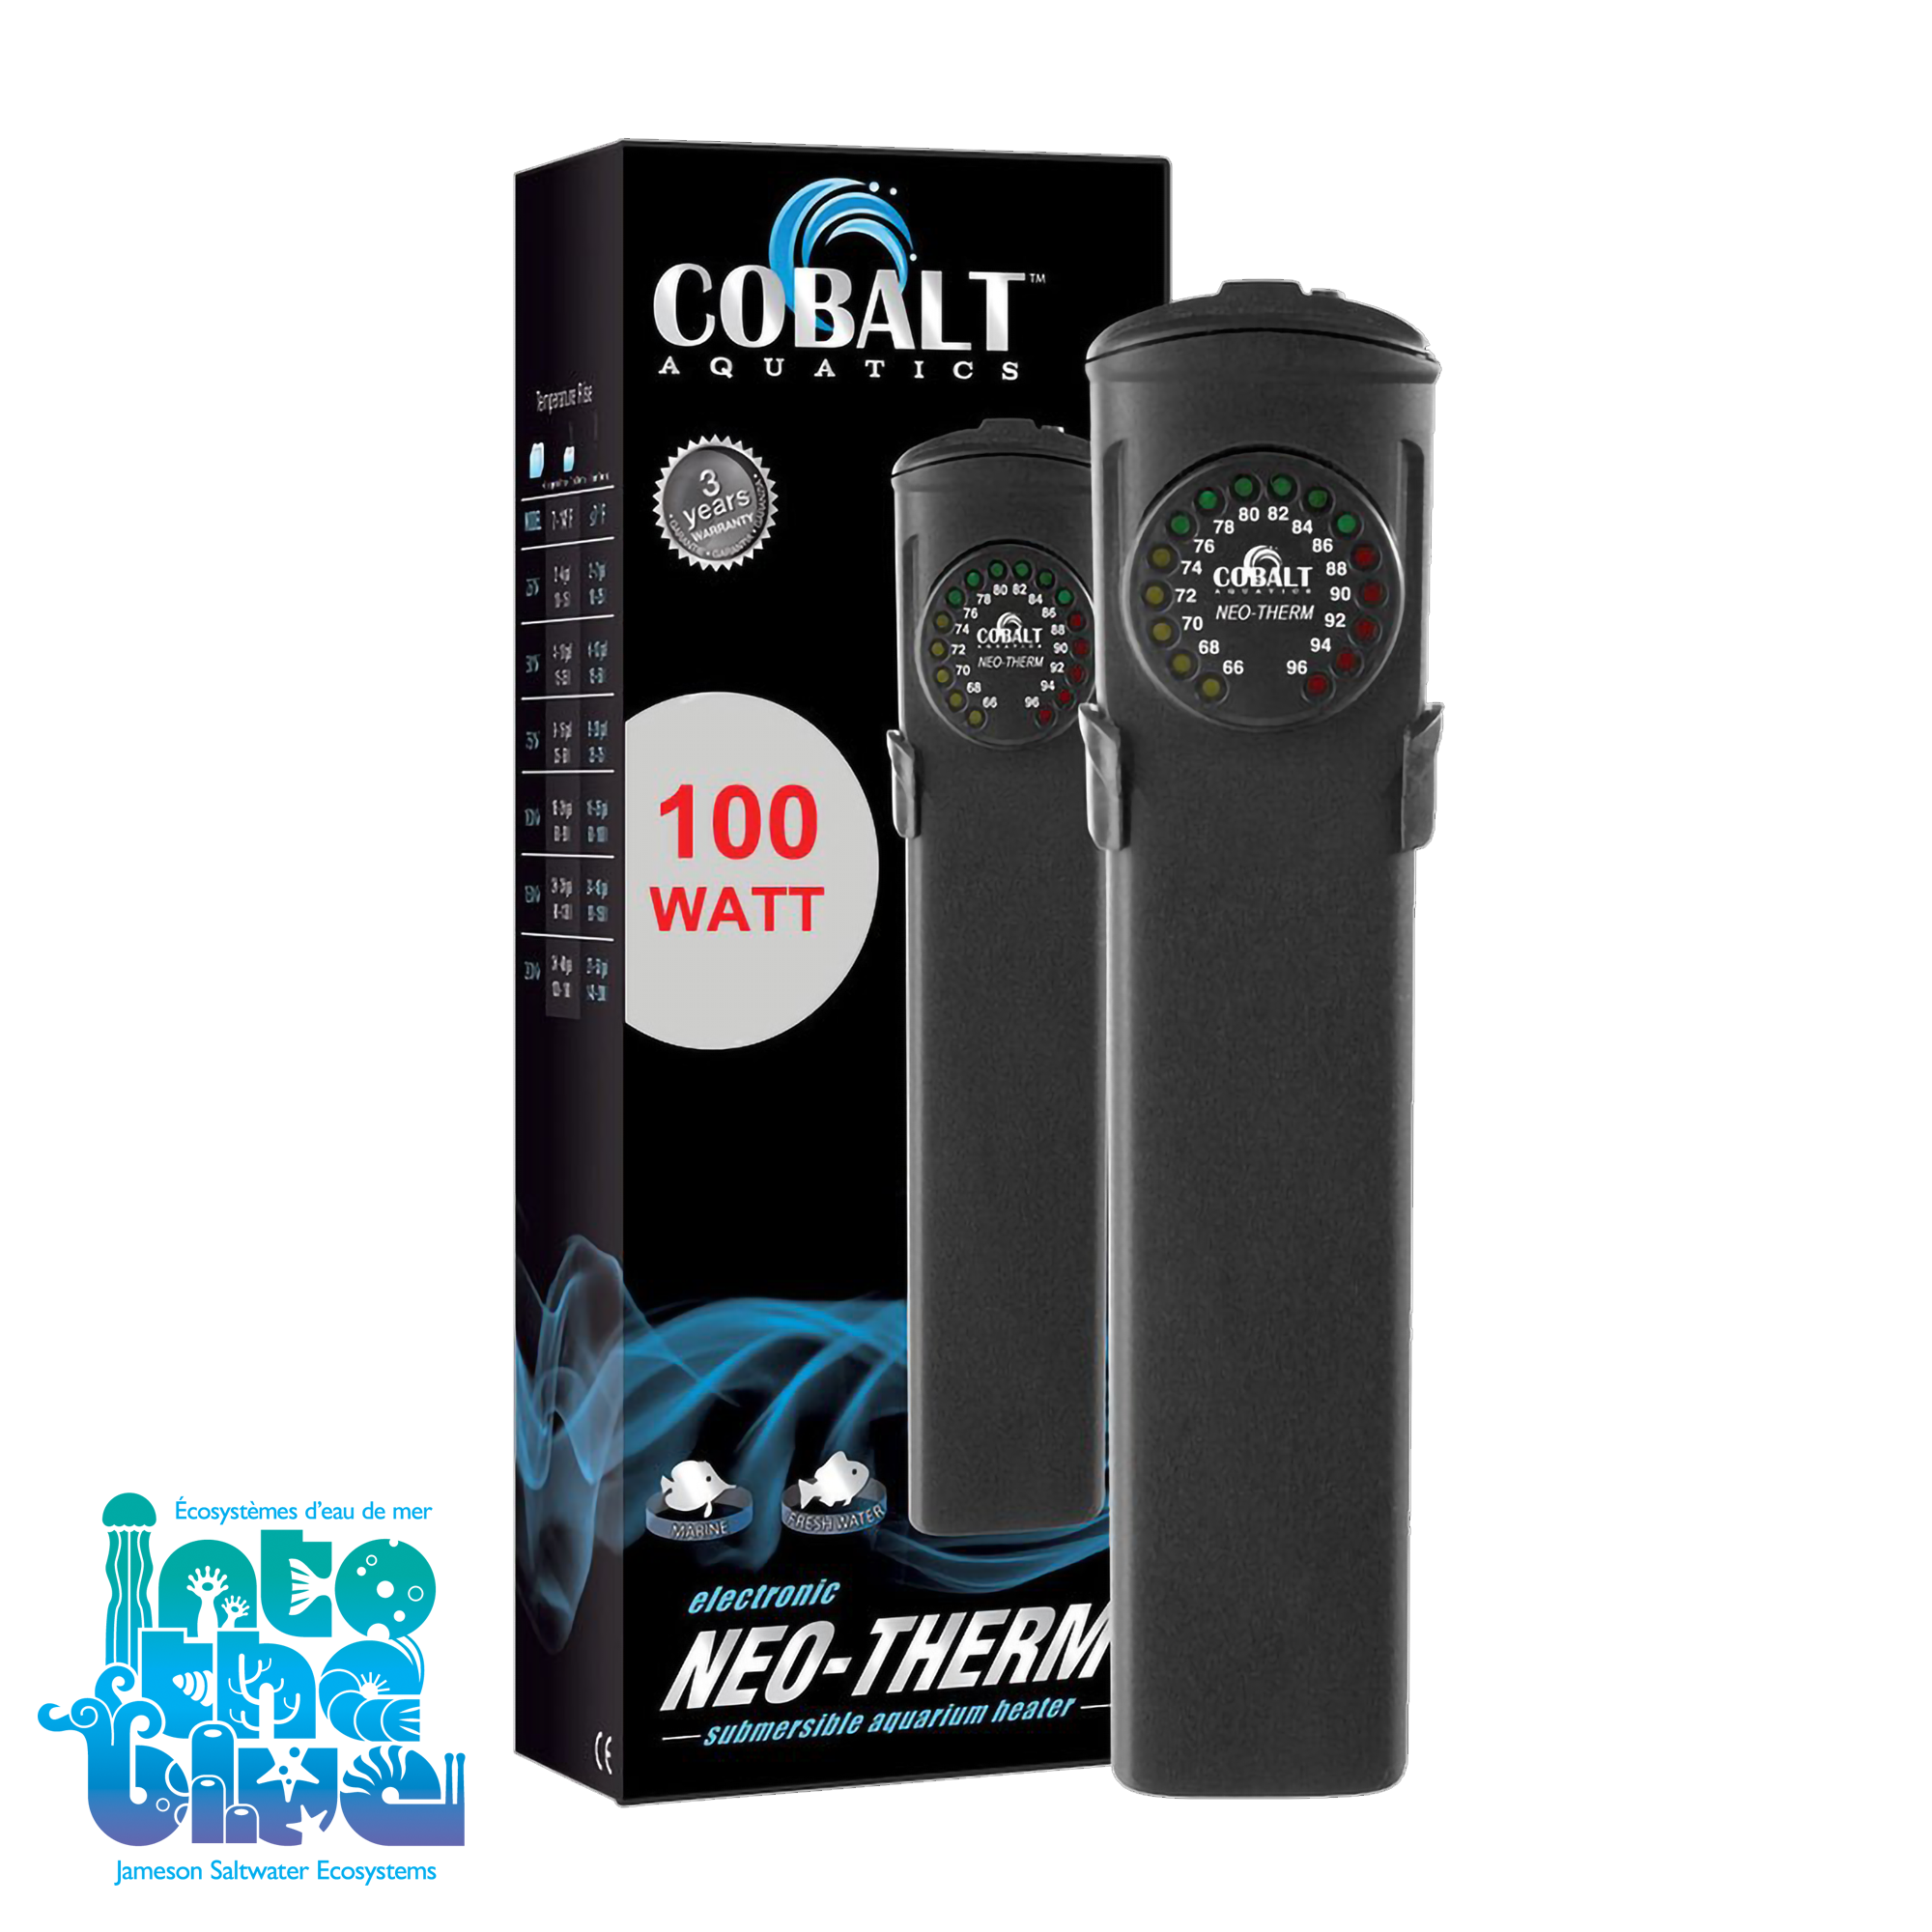 Cobalt - Neo-therm | Submersible Aquarium Heater